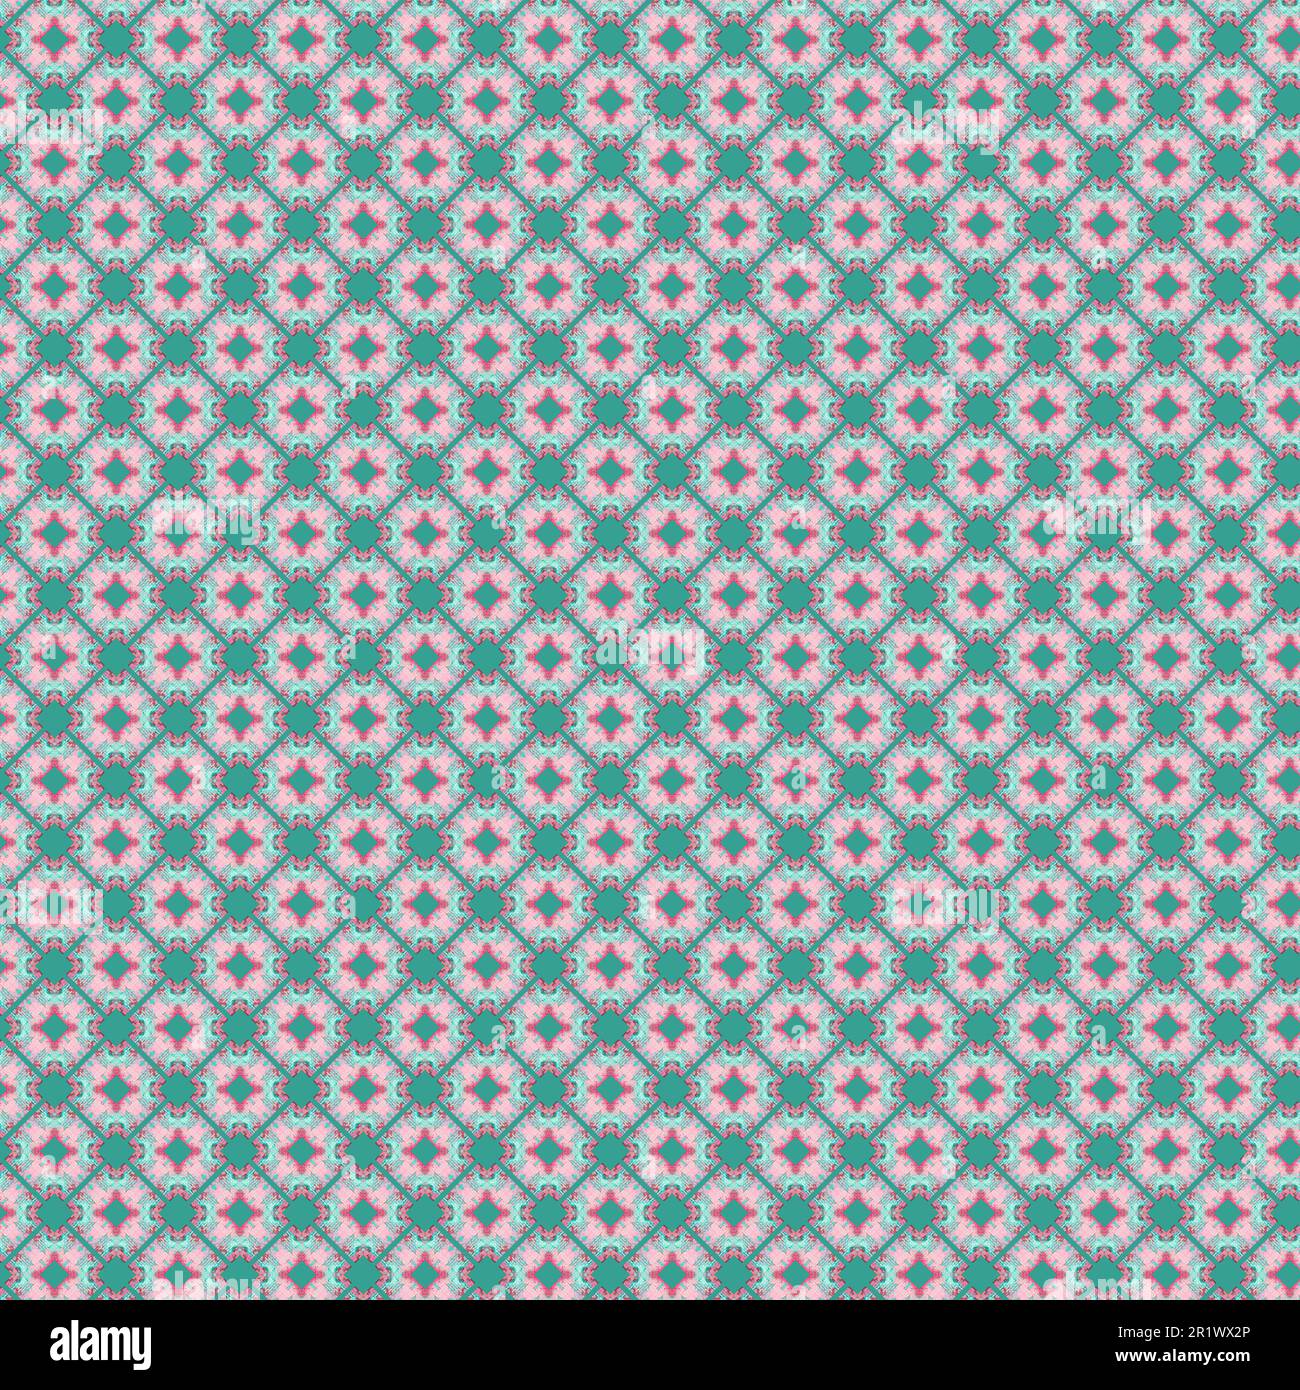 Petites formes géométriques rondes avec motif floral pour le printemps de l'été répétition sans couture dans un fond rose pastel et turquoise abstrait Banque D'Images